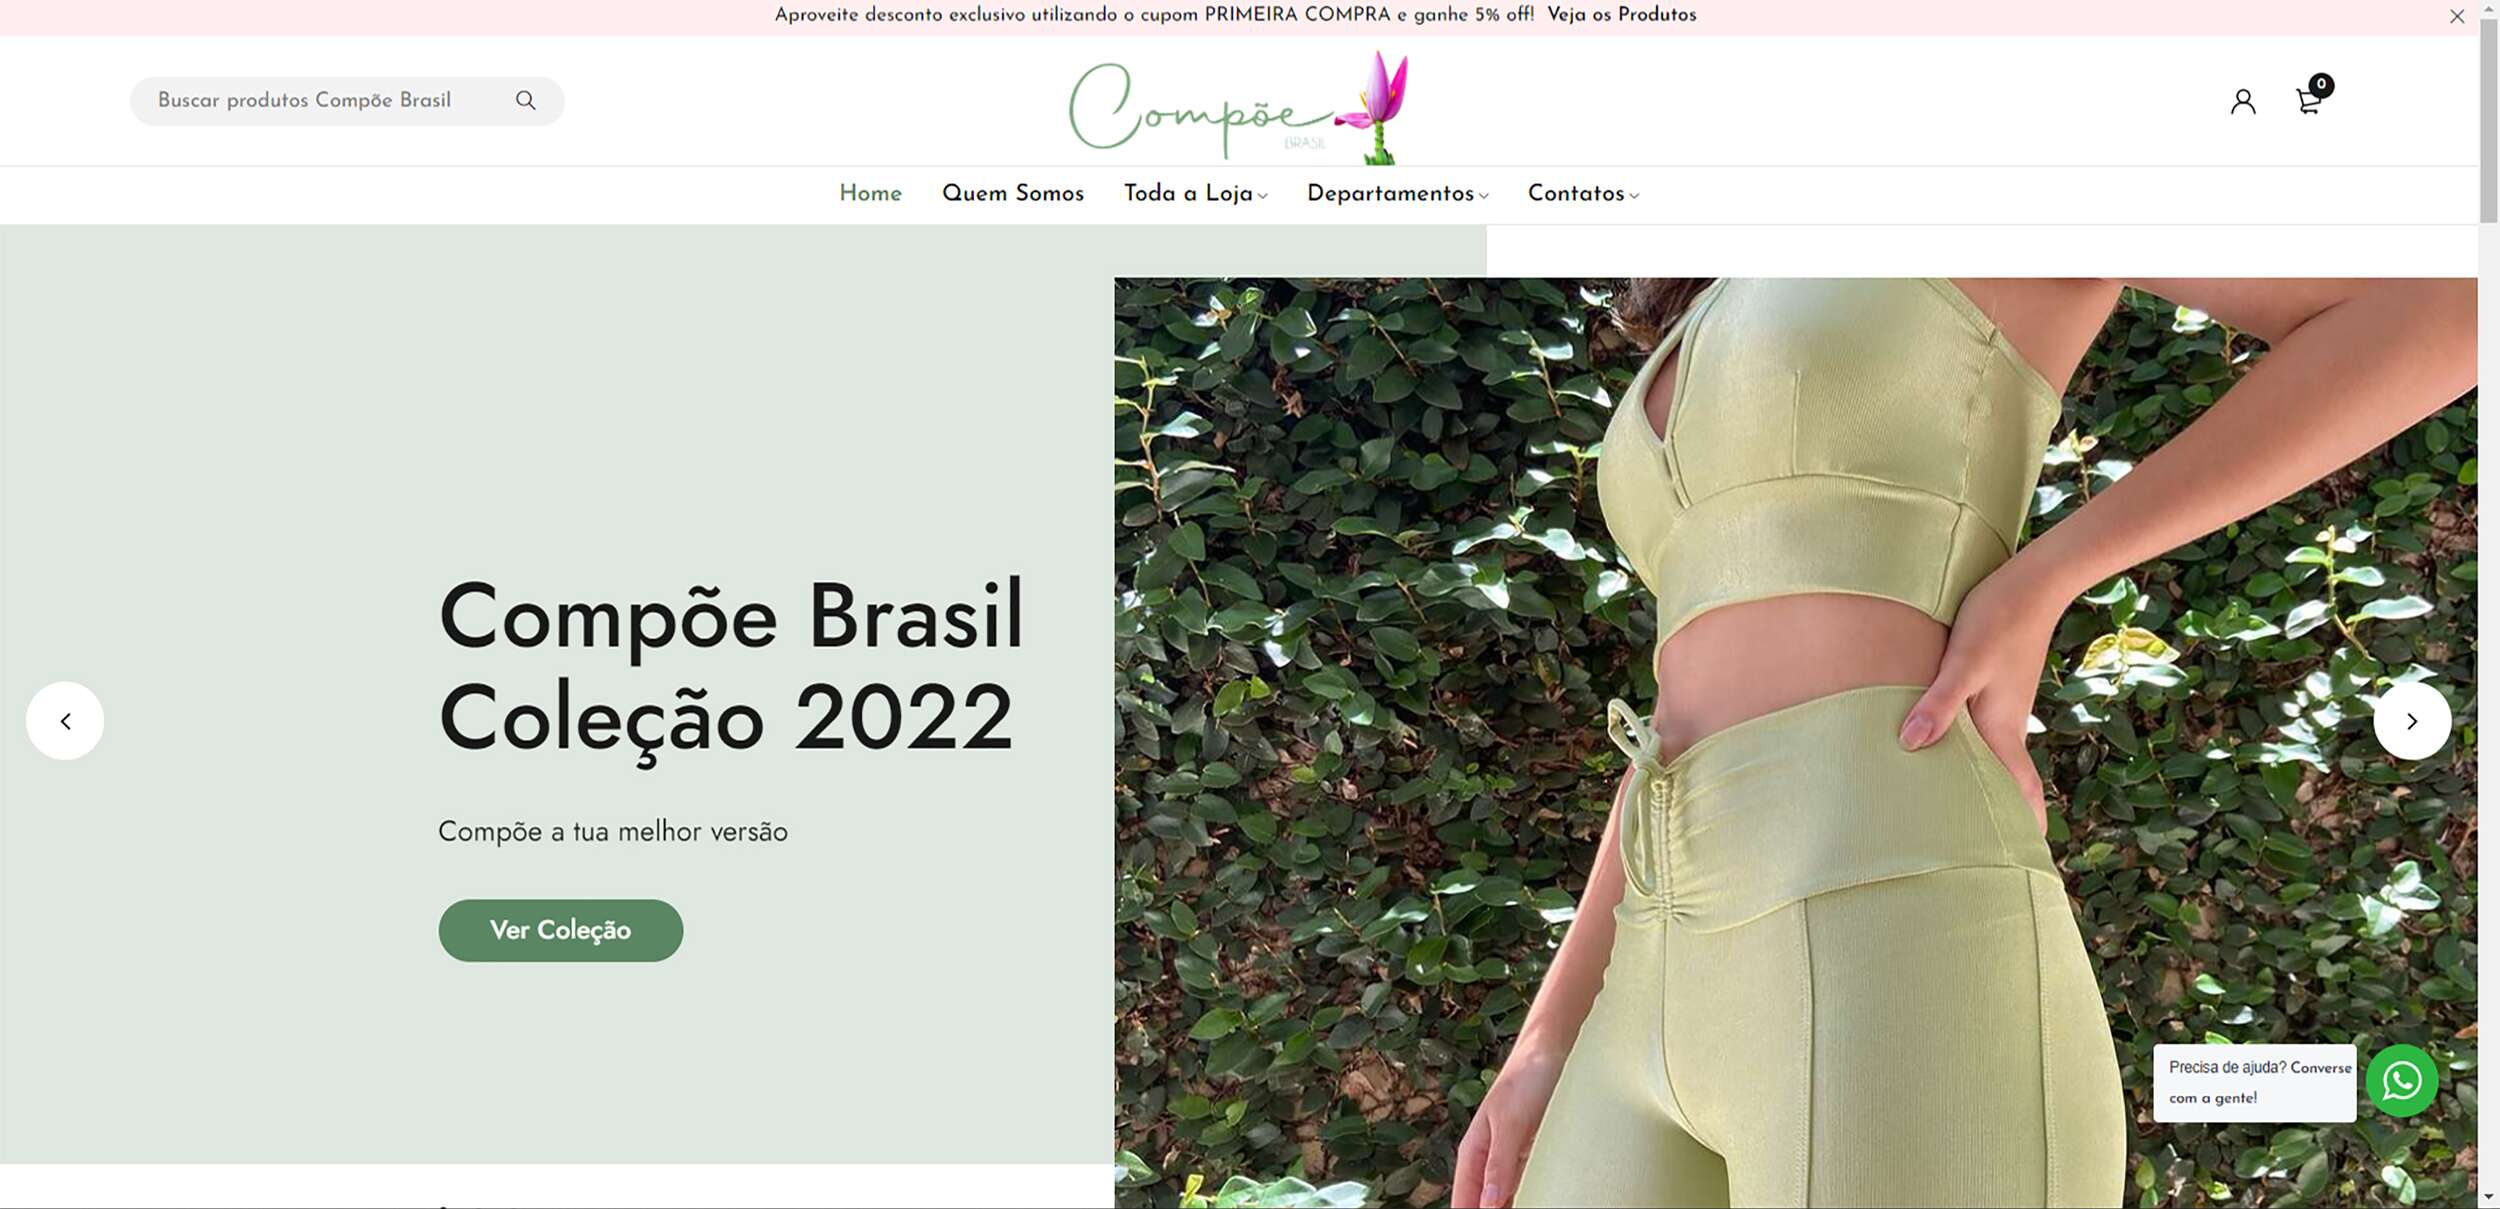 RAO Marketing Digital - Compõe Brasil Fitness E-commerce